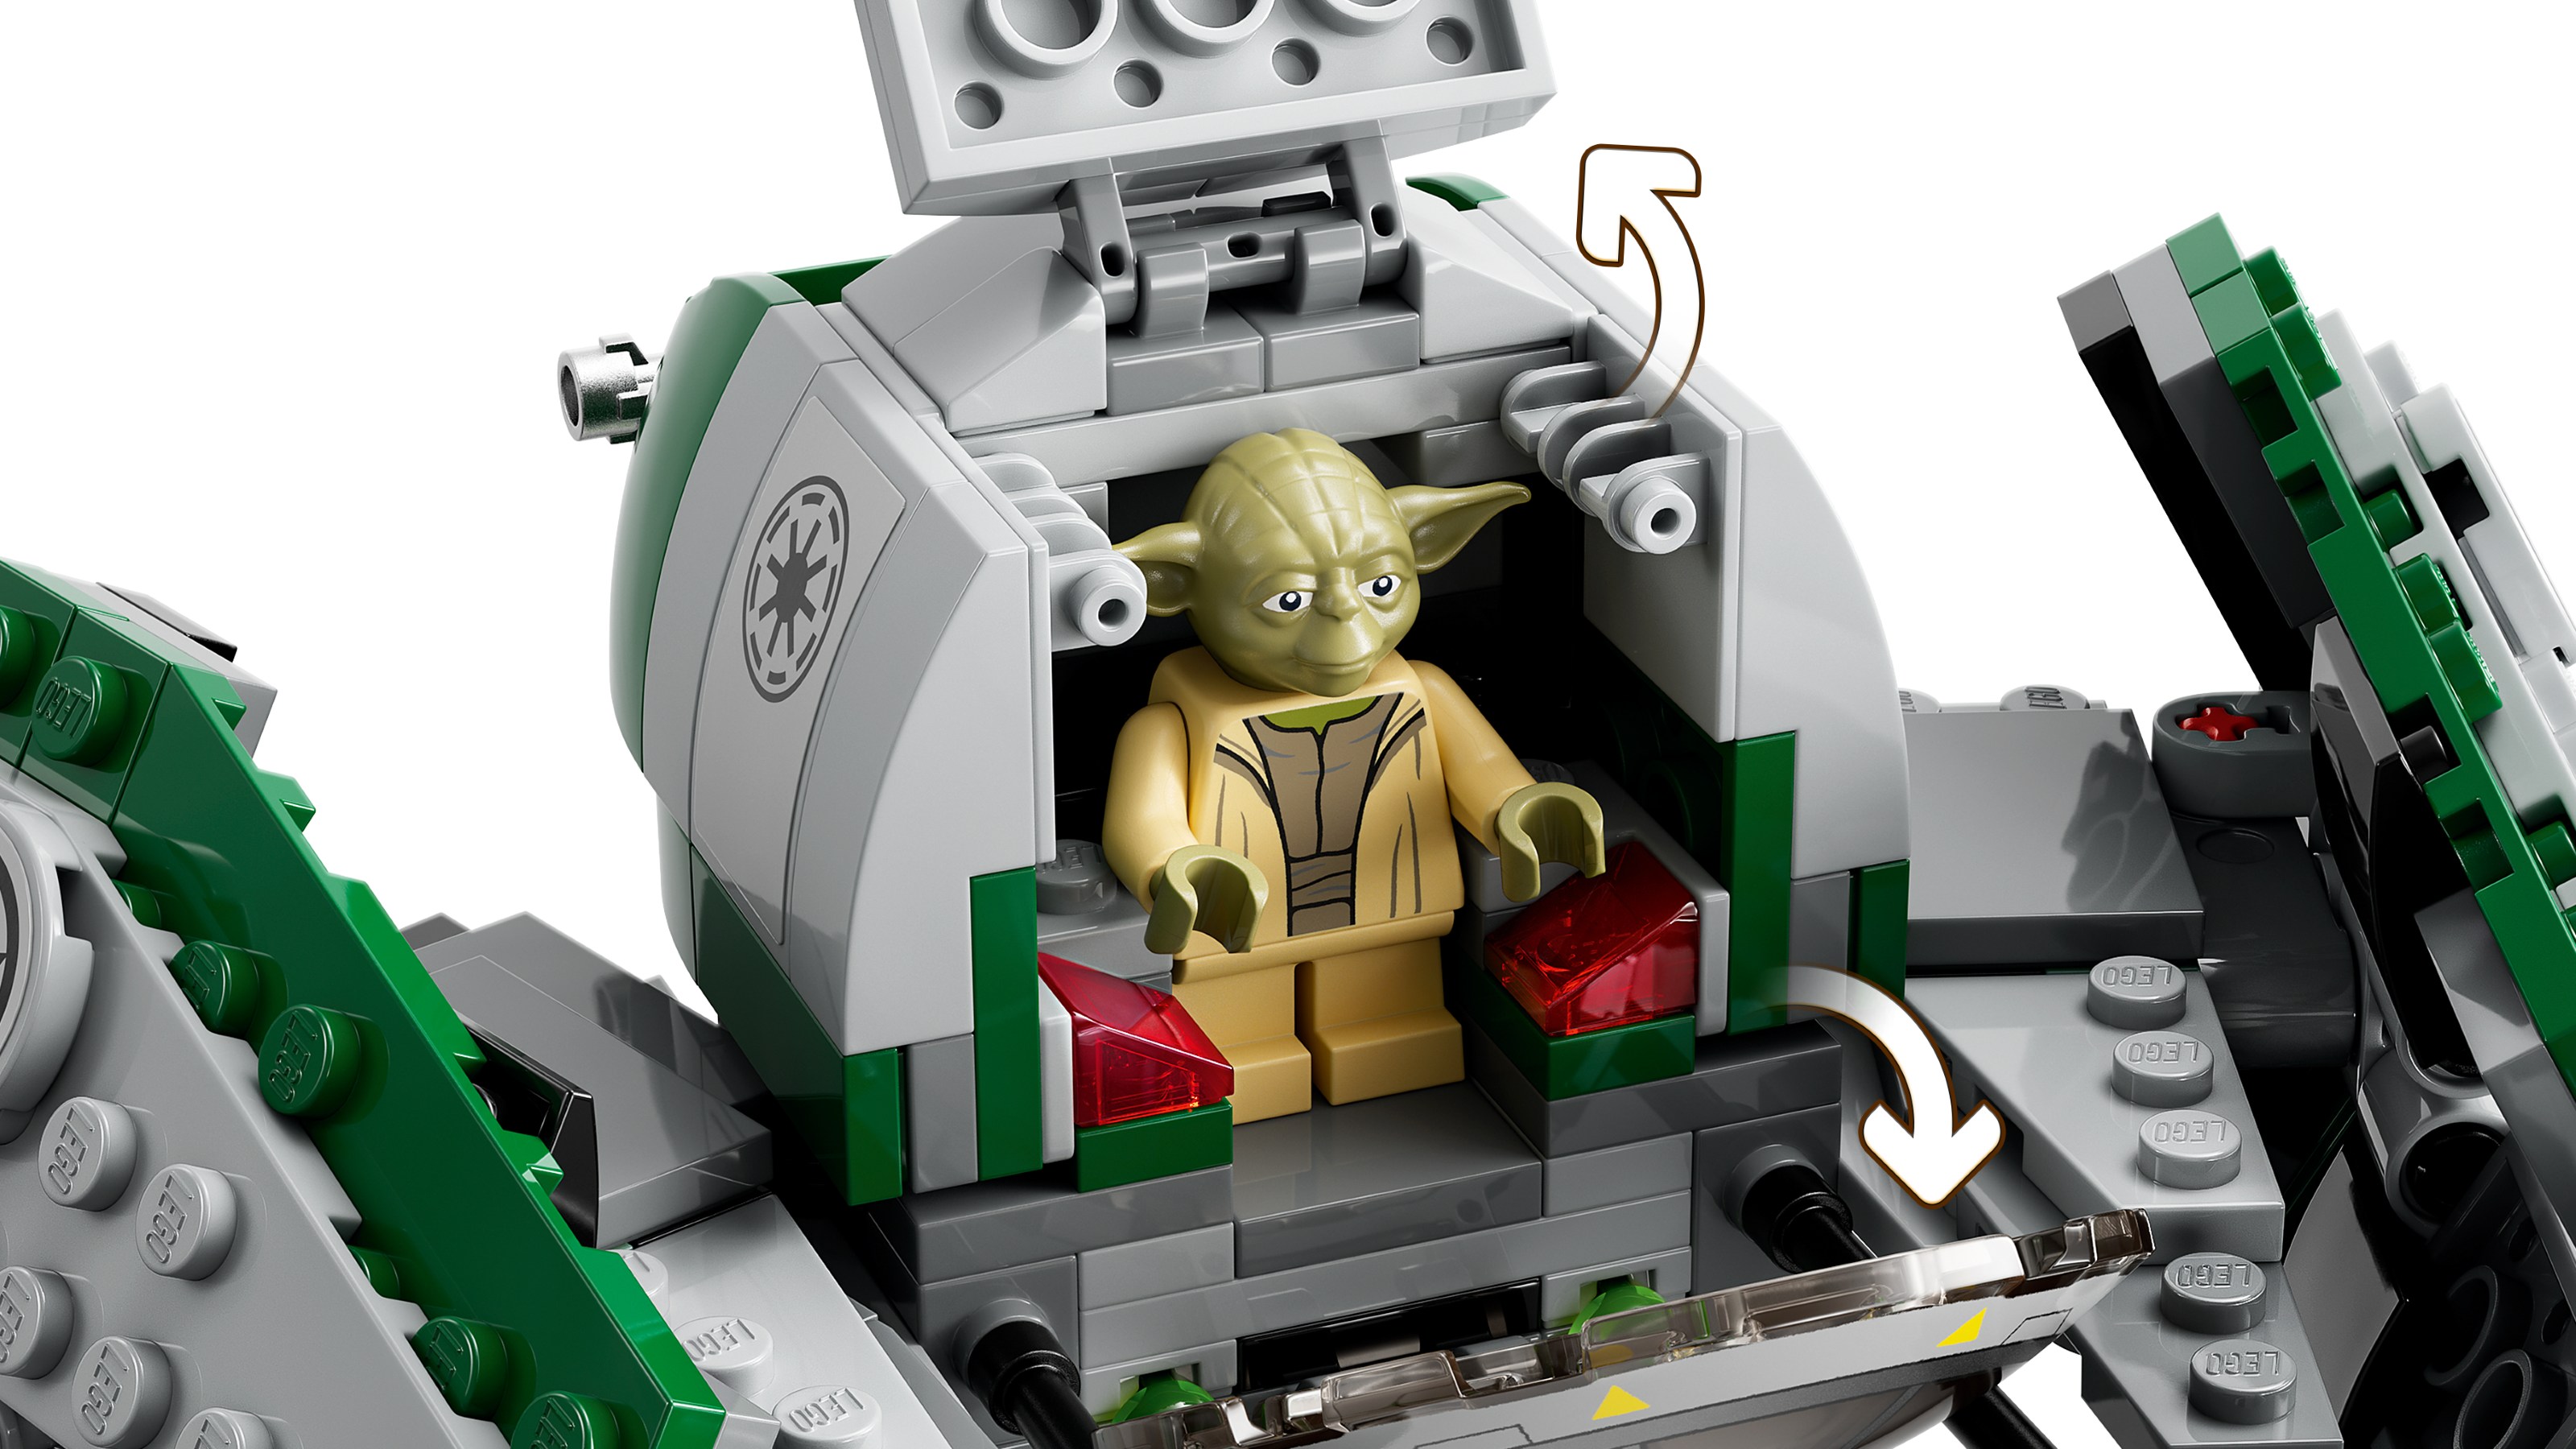 LEGO Star Wars Le Jedi Starfighter de Yoda 75360 Ensemble de construction  (253 pièces)